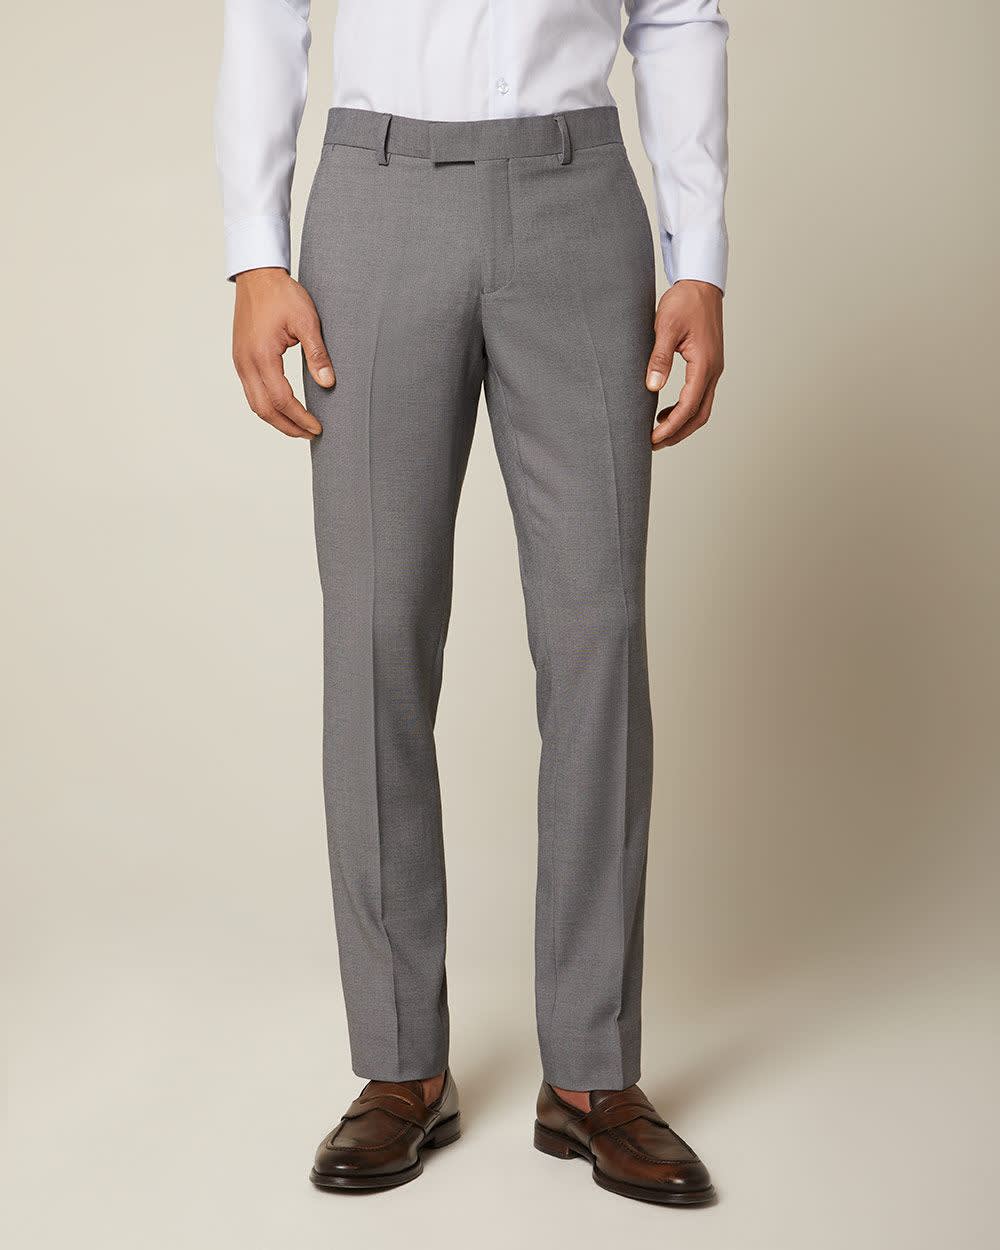 Essential Slim Fit Grey Suit Pant 30 Rwandco